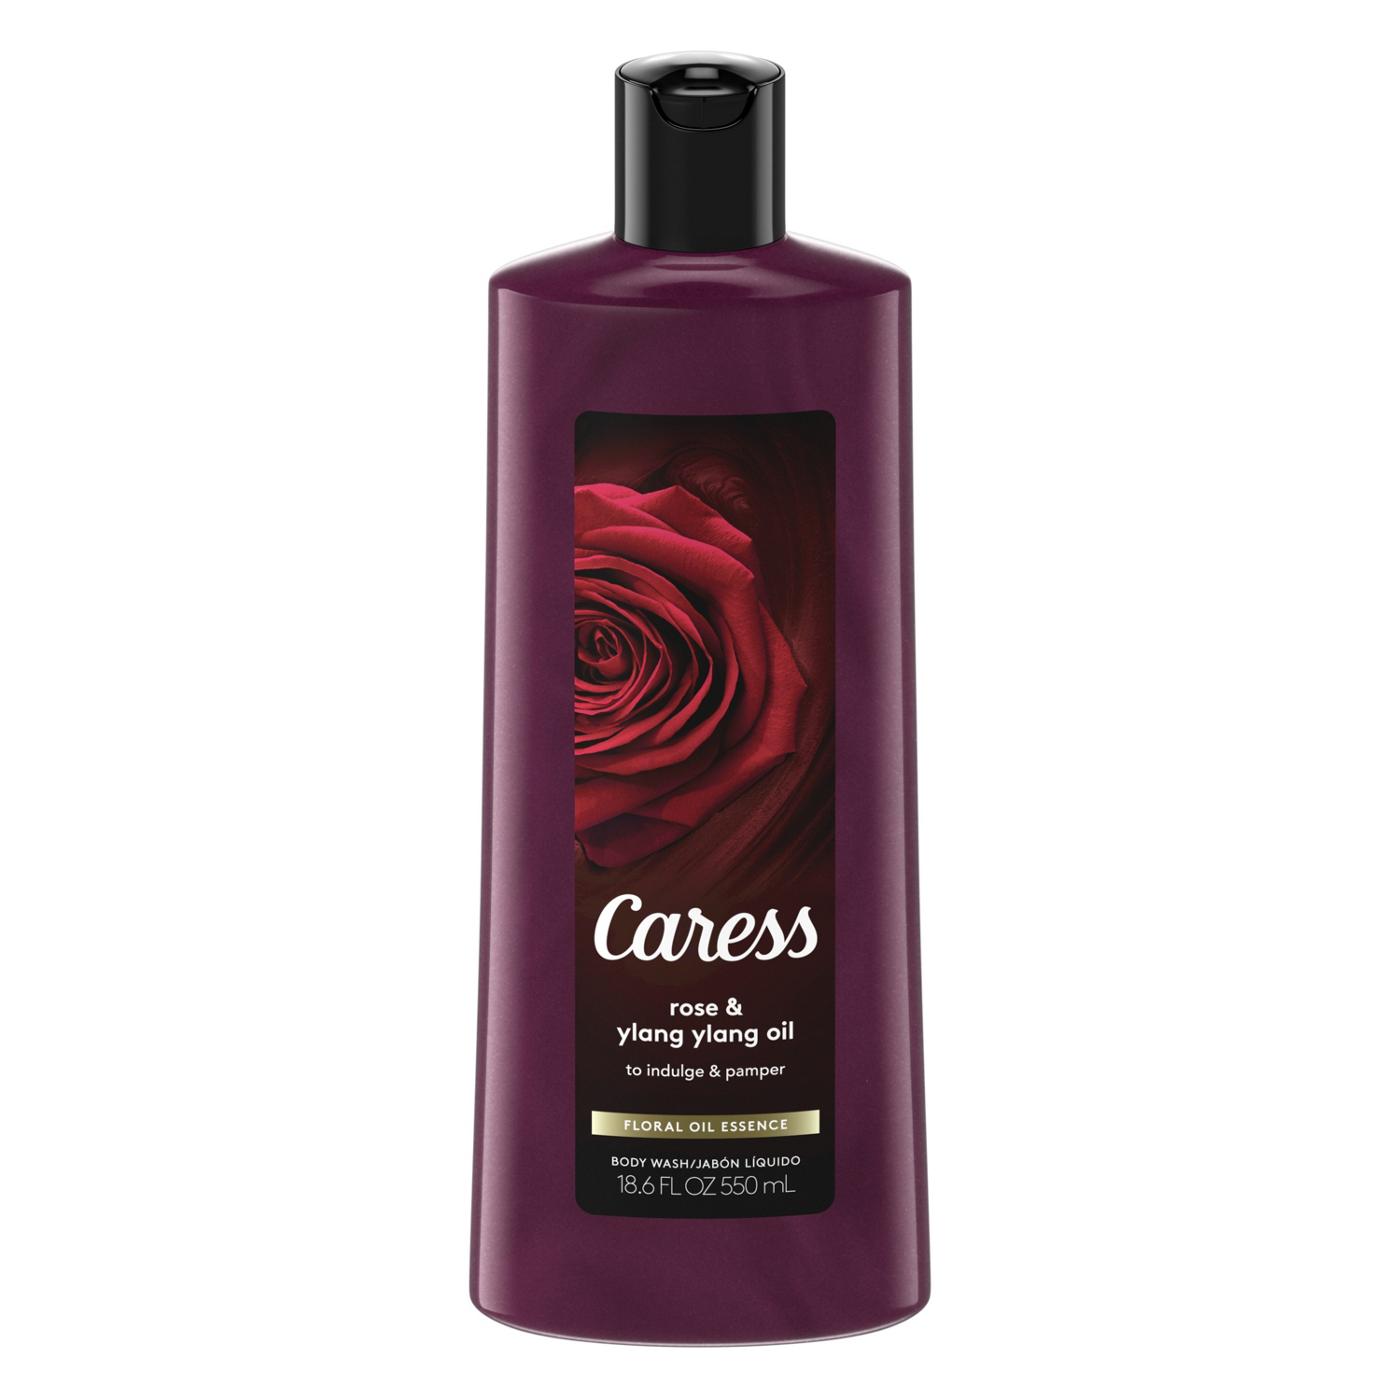 Caress Body Wash - Rose & Ylang Ylang Oil; image 1 of 4